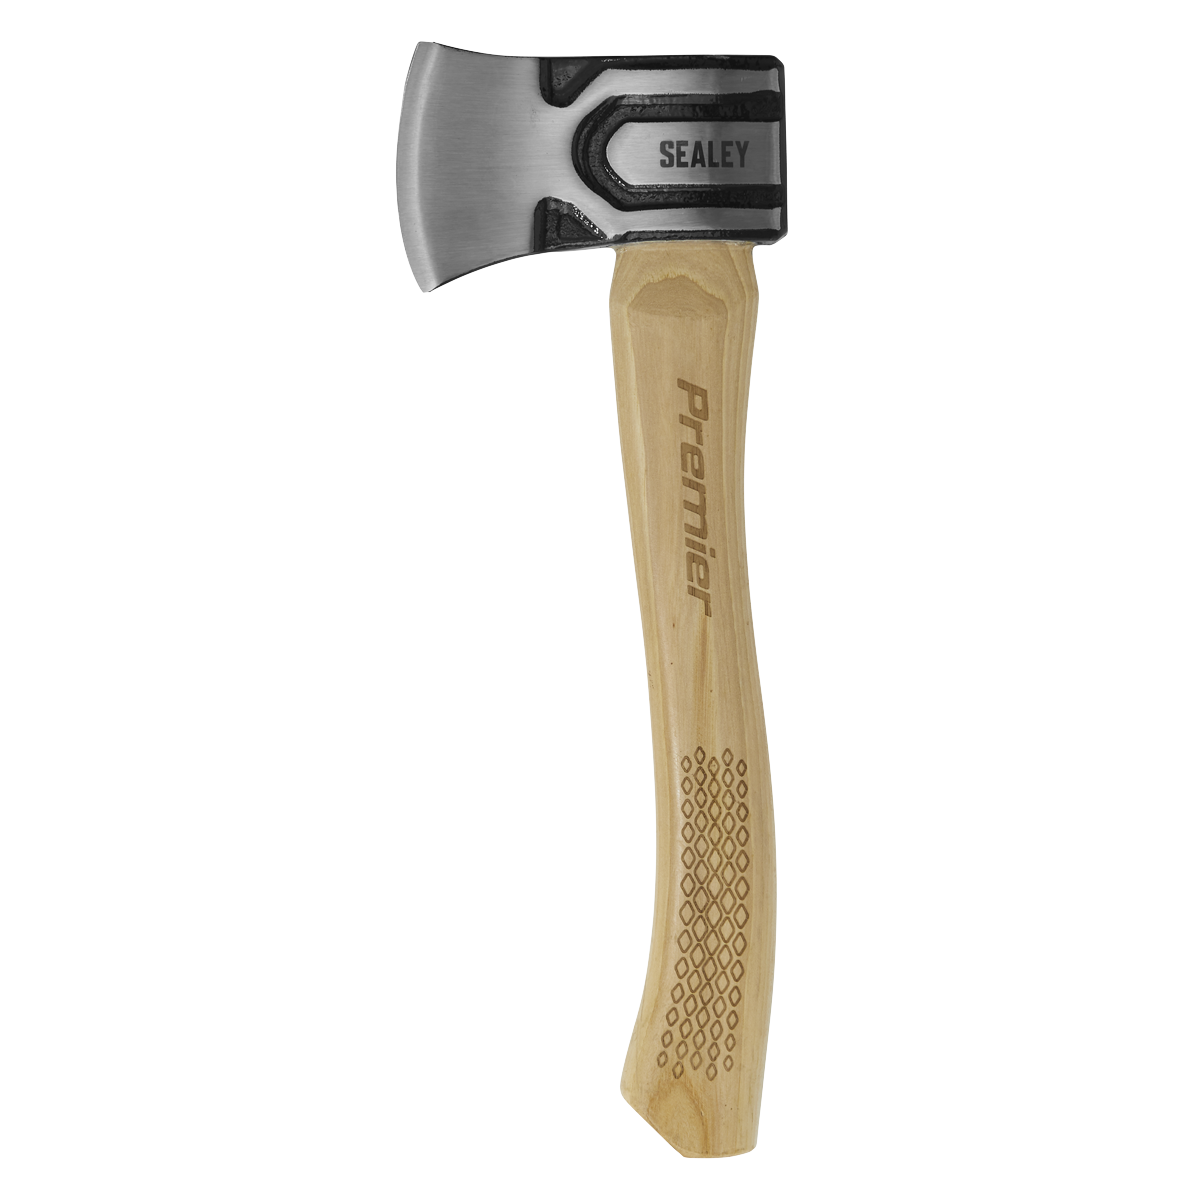 Sealey axe cutter